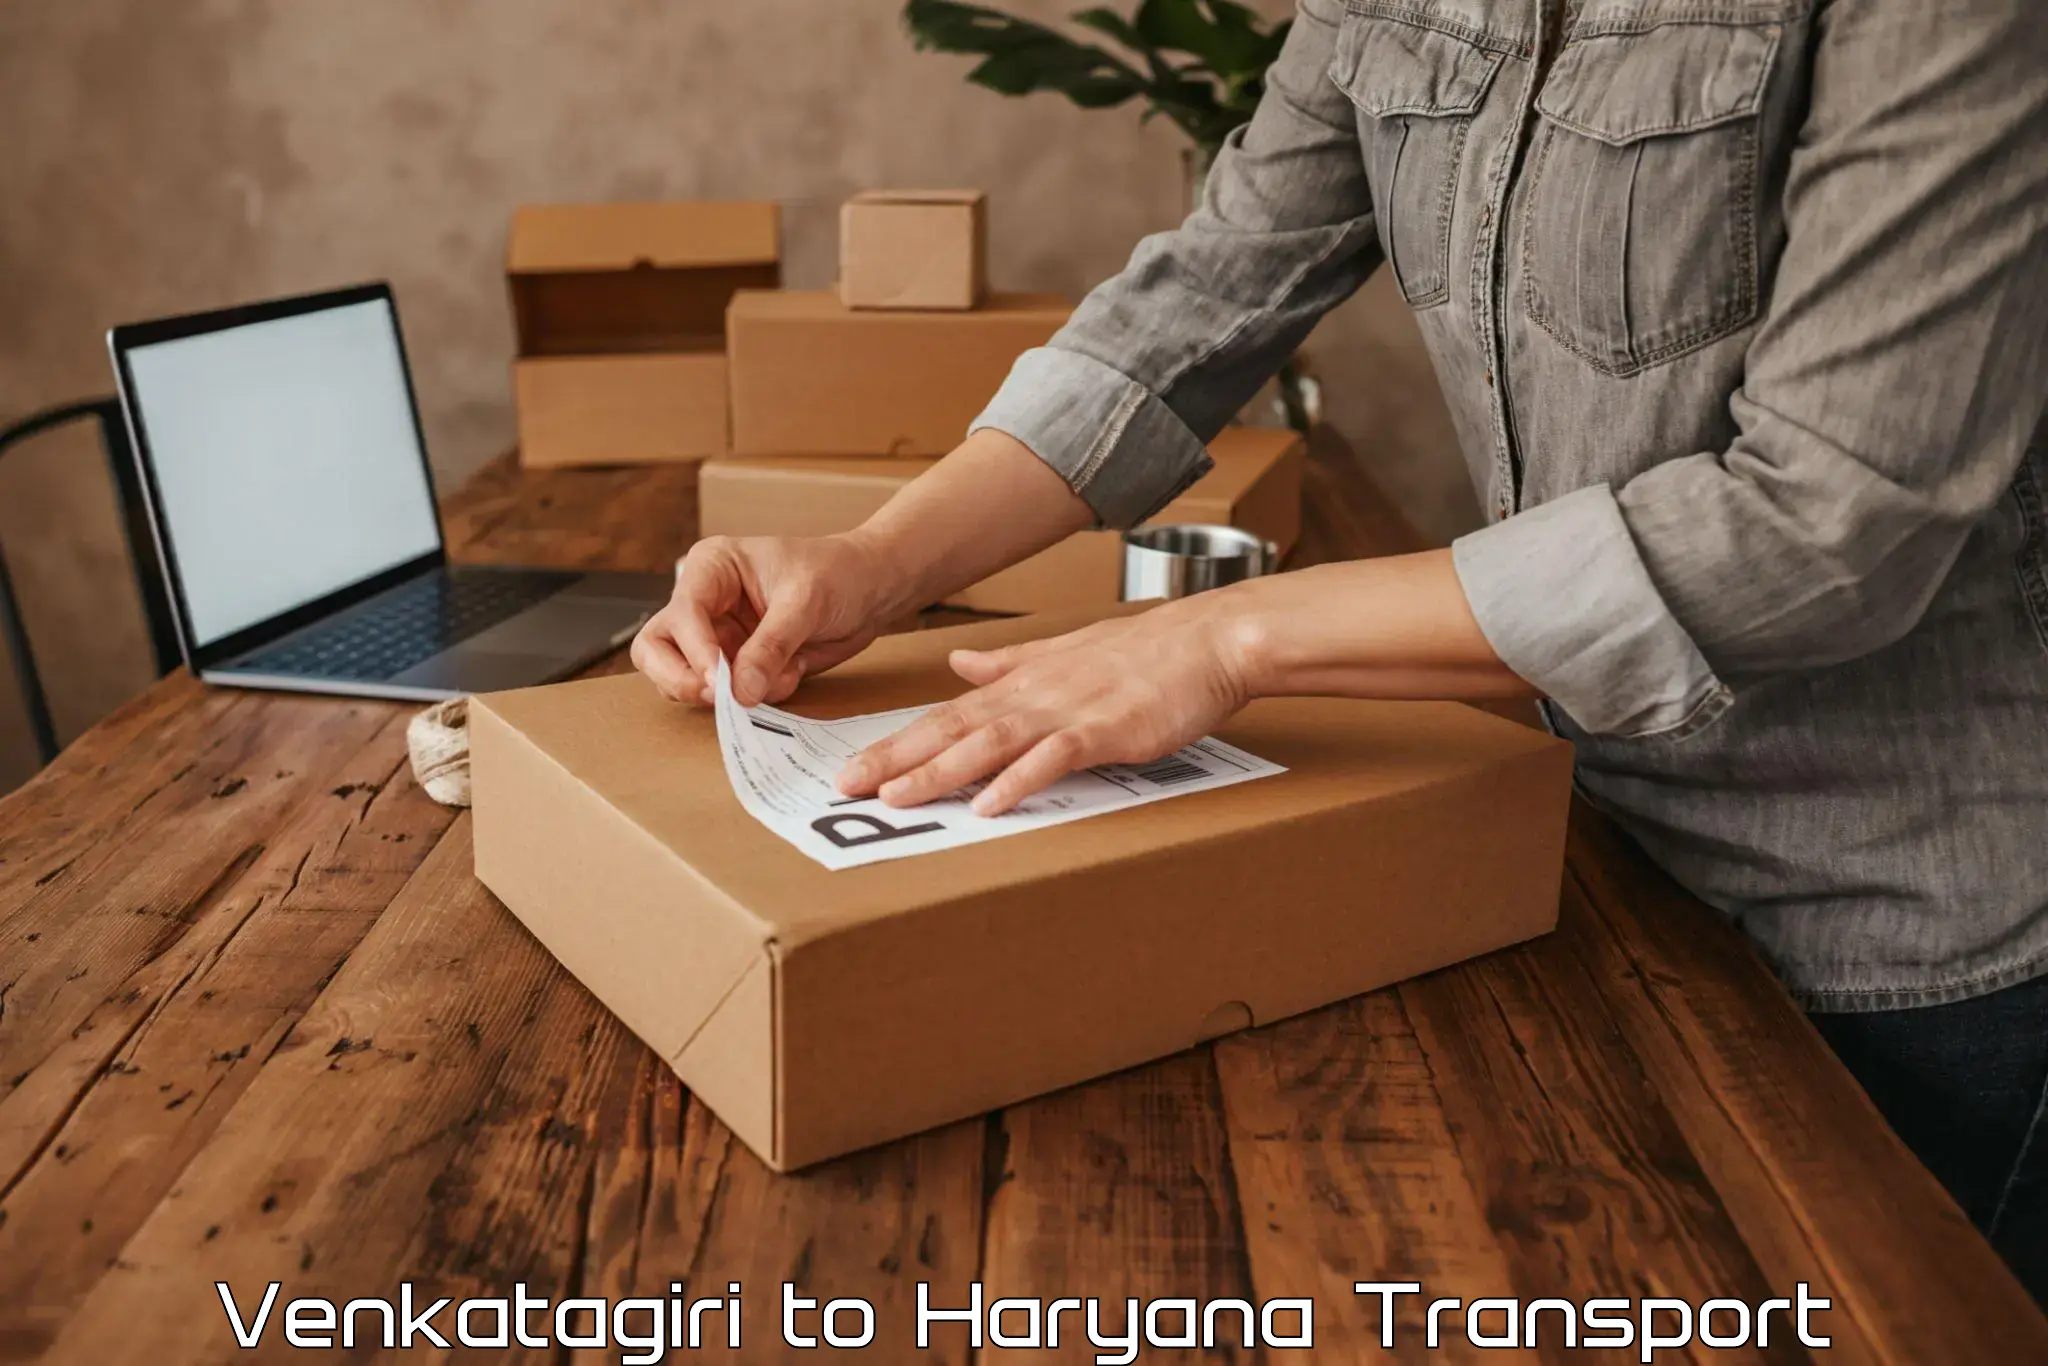 Furniture transport service Venkatagiri to Panchkula